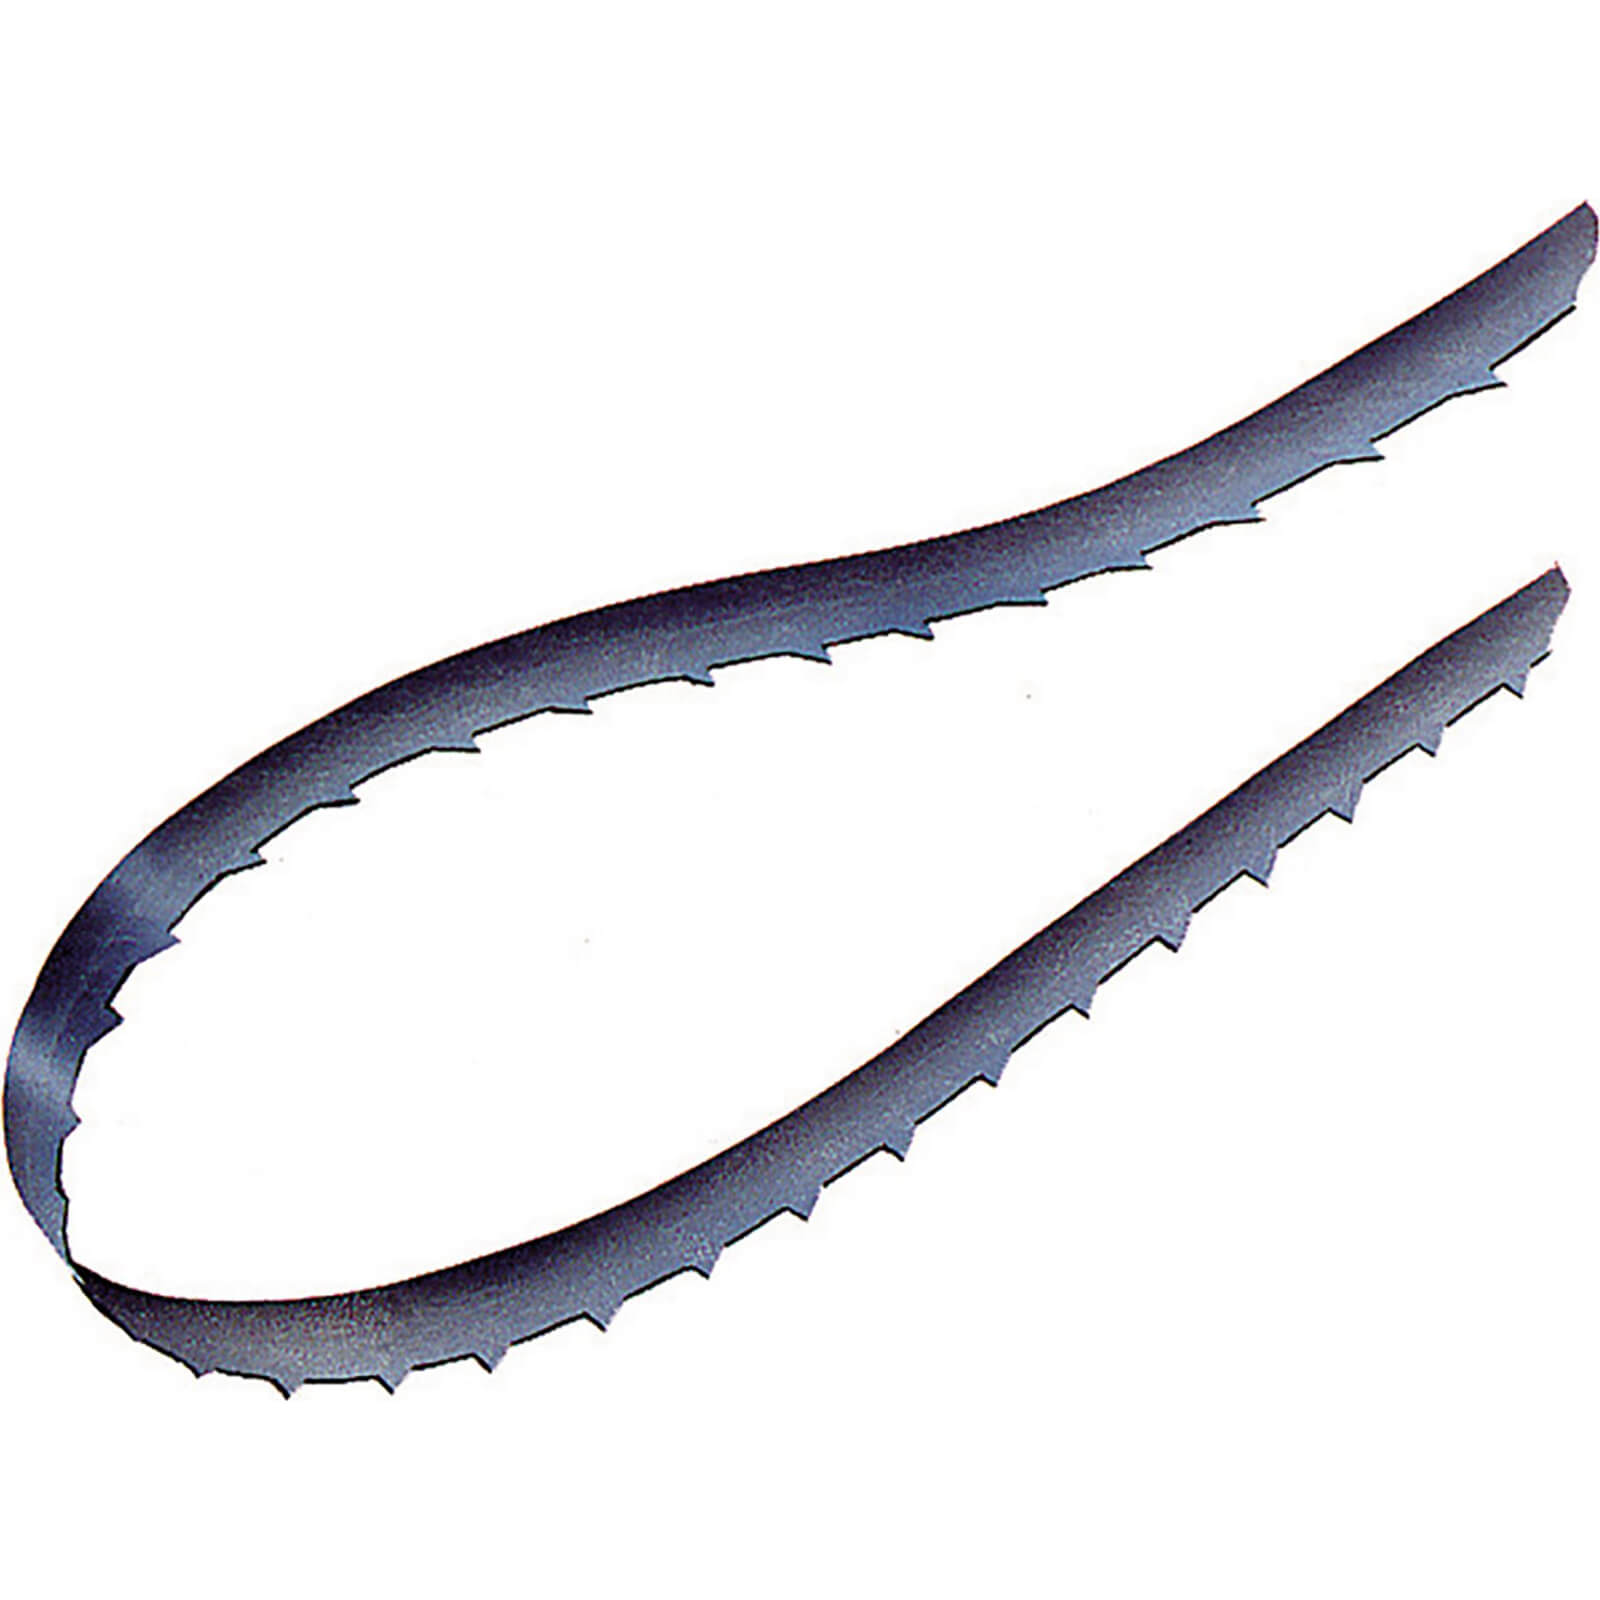 Image of Draper Bandsaw Blades 1785mm 1/4" 6tpi